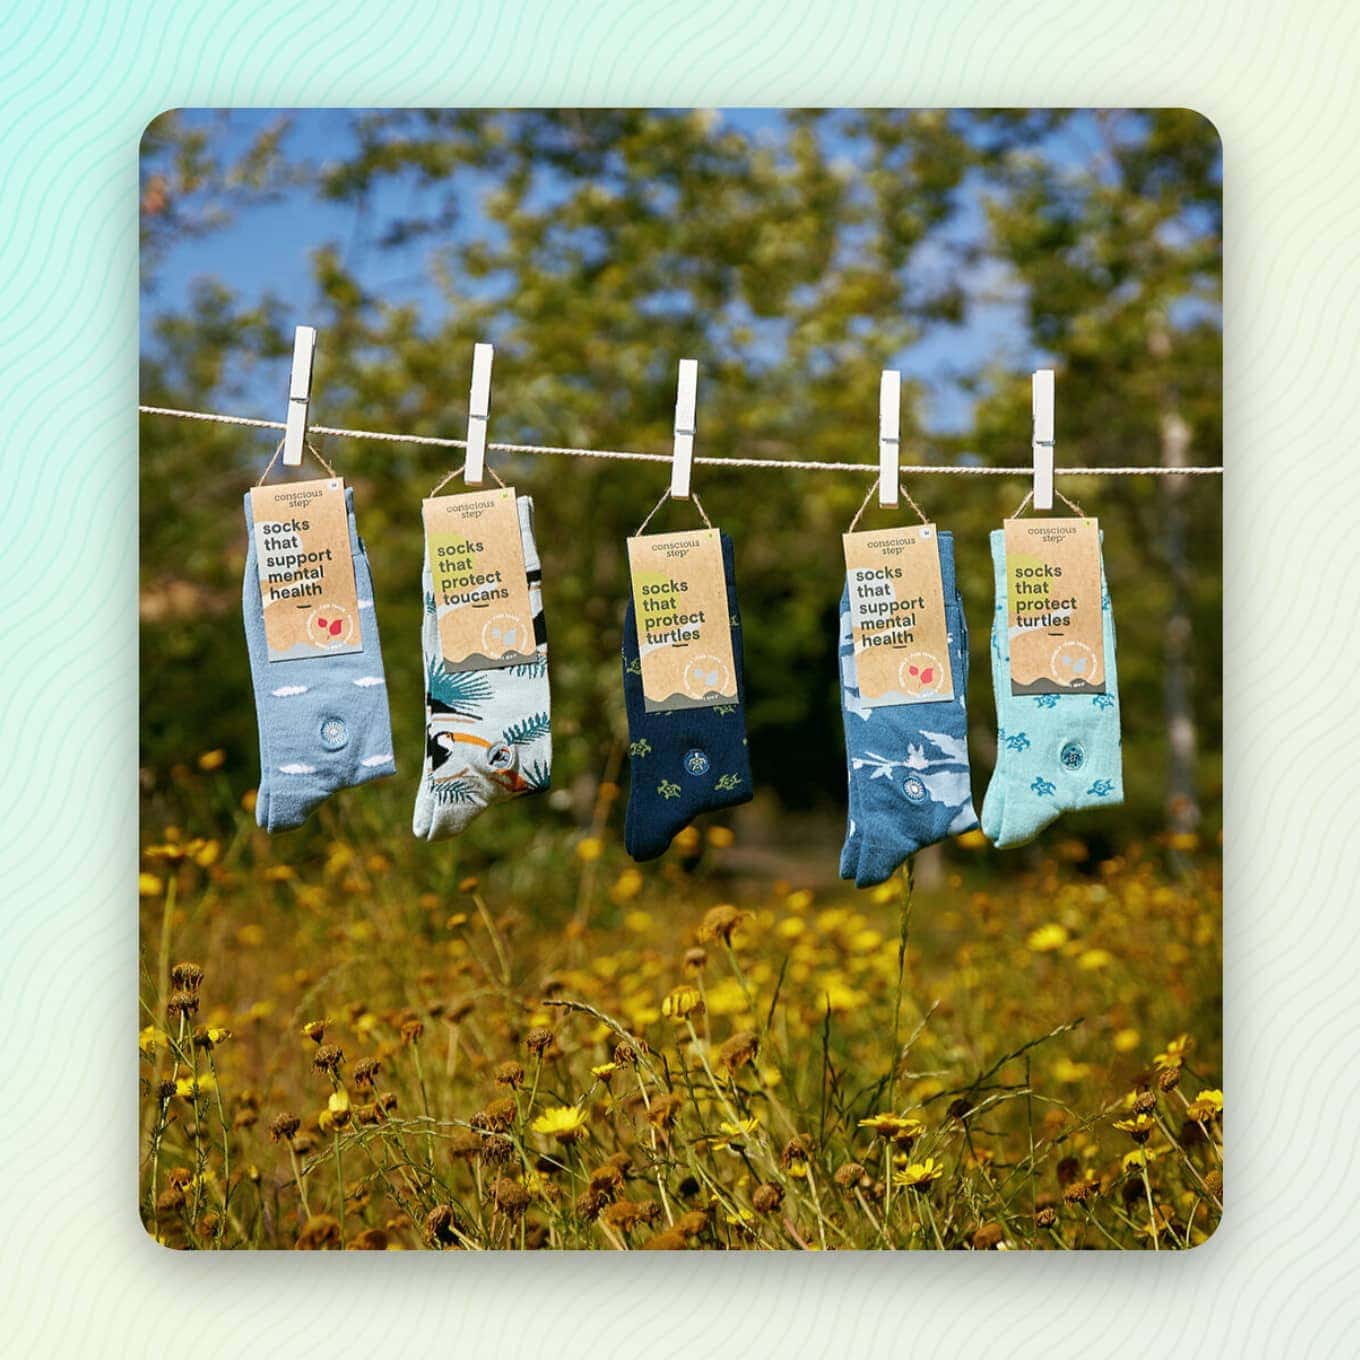 Sokken die aan een waslijn hangen - met een verpakking waarop staat "Sokken die..." : ondersteunt de geestelijke gezondheid, beschermt toekans, beschermt schildpadden, ondersteunt de geestelijke gezondheid